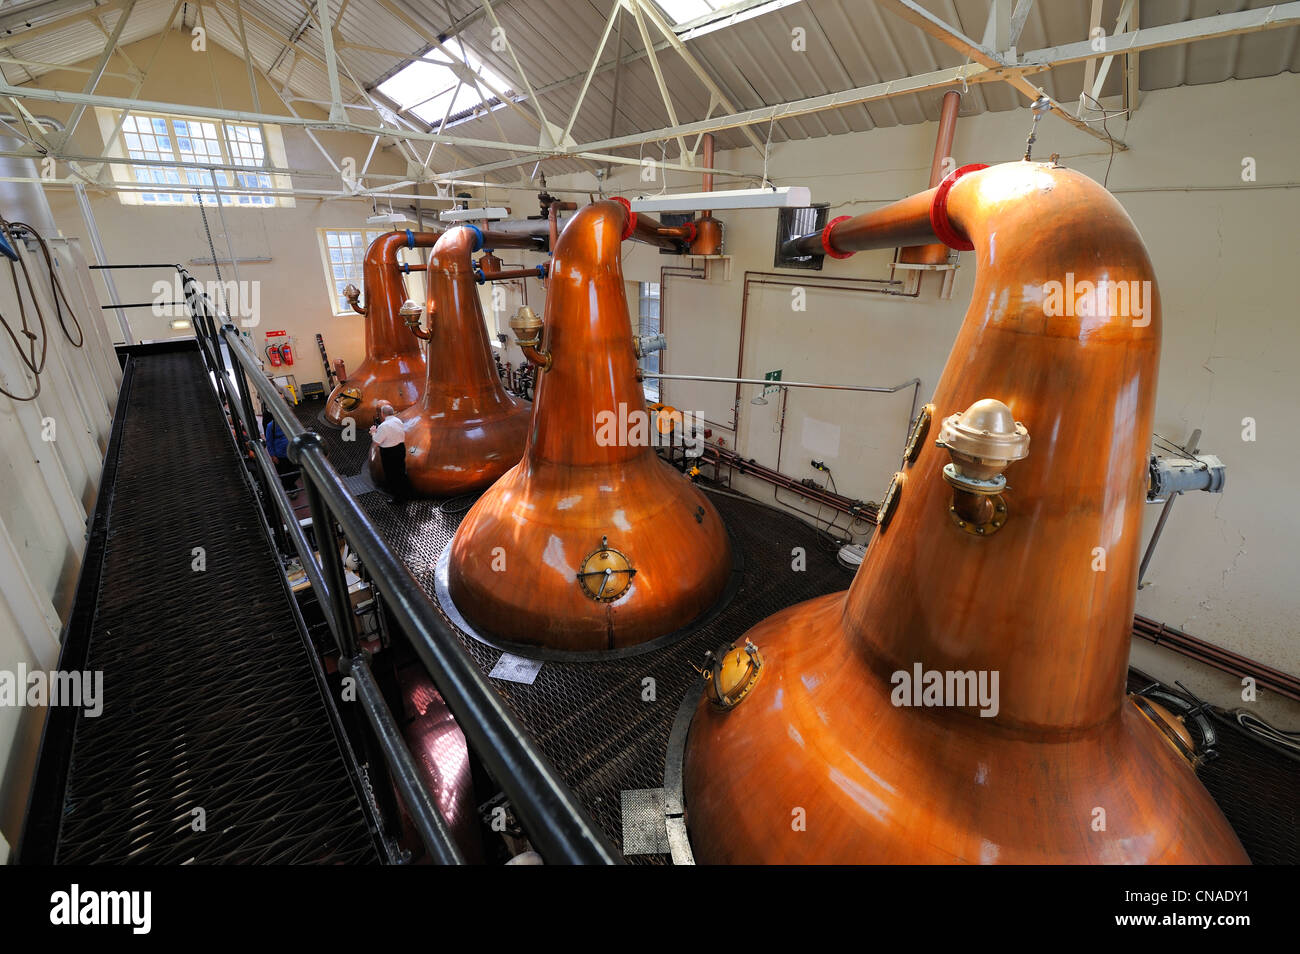 Royaume-uni, Ecosse, îles Orcades, Kirkwall, distillerie de whisky Highland Park, se laver en cuivre alambics de distillation Banque D'Images